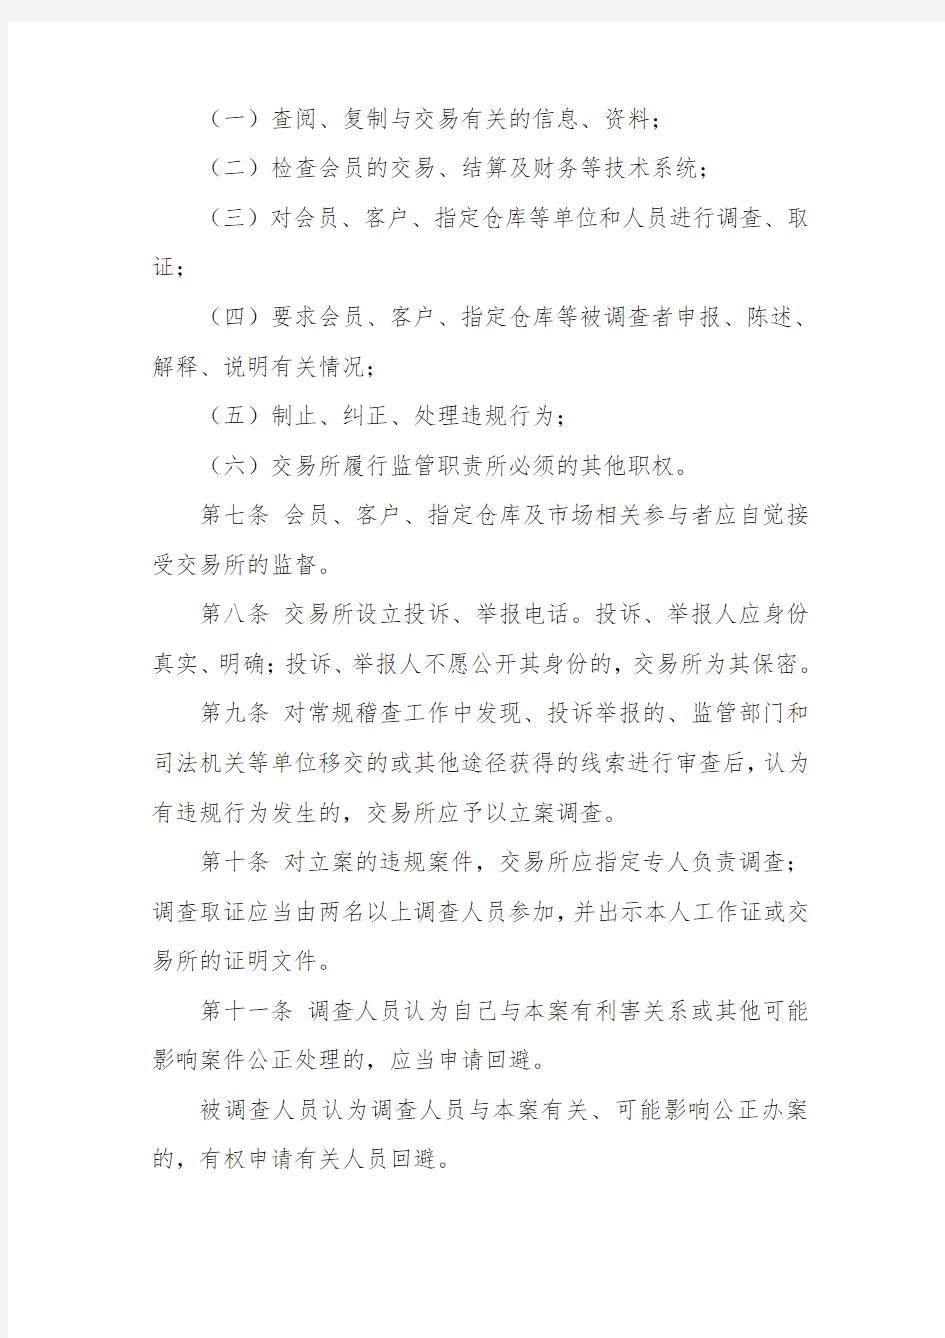 参考资料(14)业务规则(风险控制)：上海黄金交易所违规违约处理办法